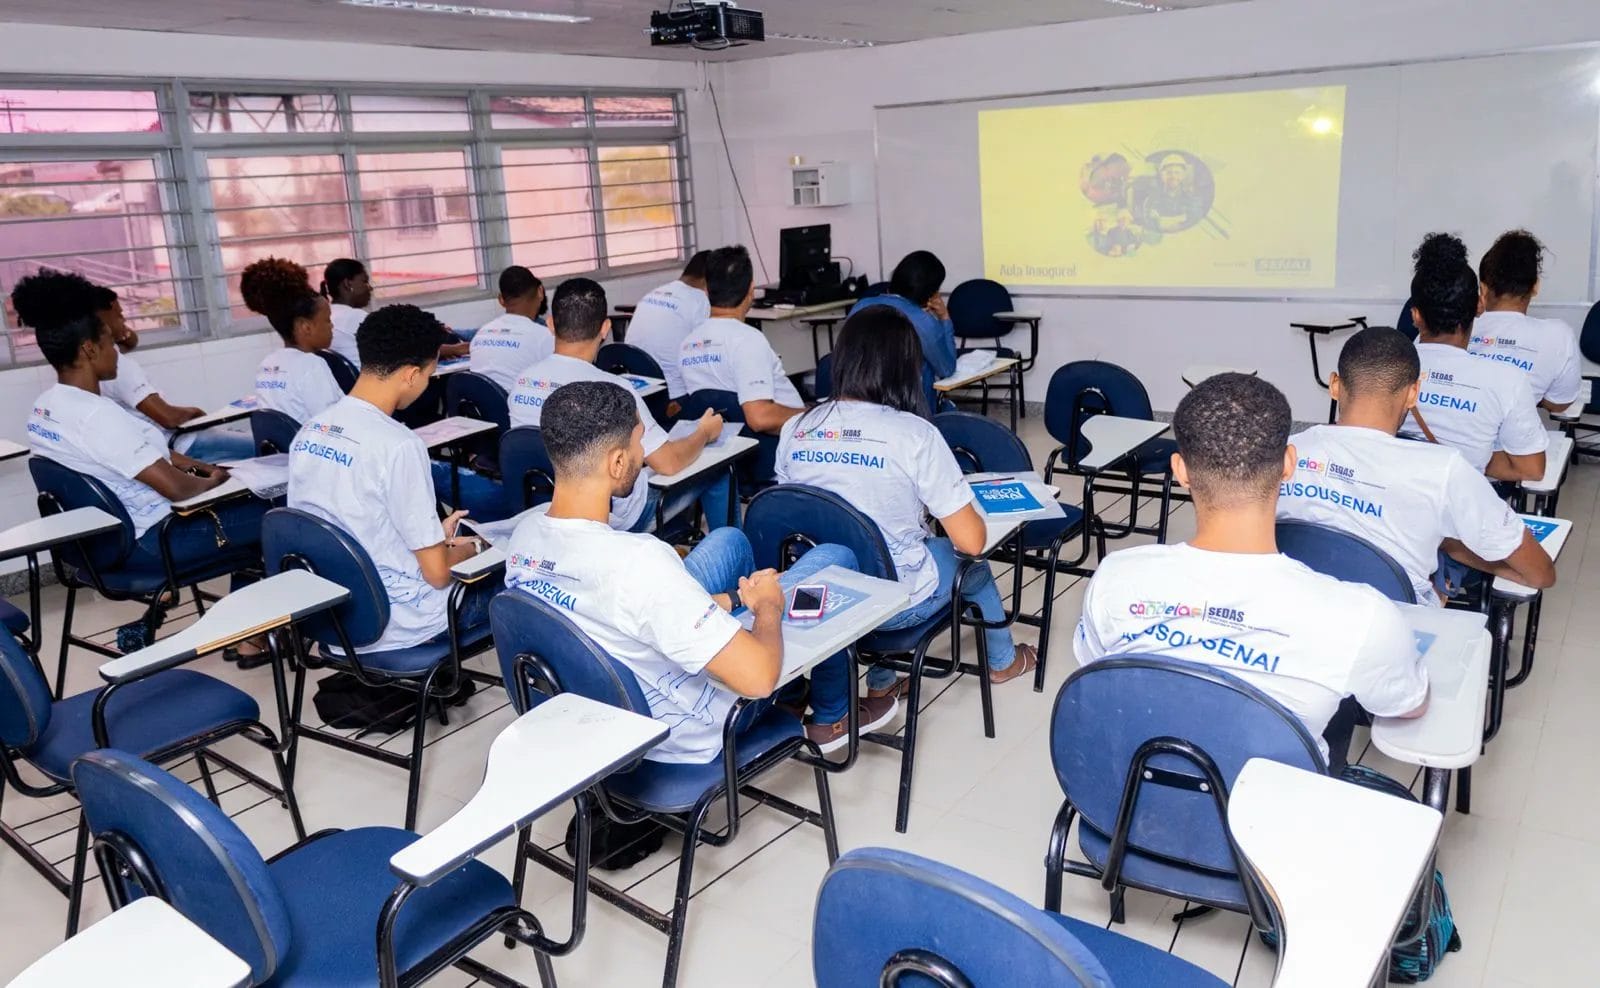 Programa "Qualifica Candeias" oferece 200 vagas em cursos profissionalizantes para candeenses nesta quarta-feira